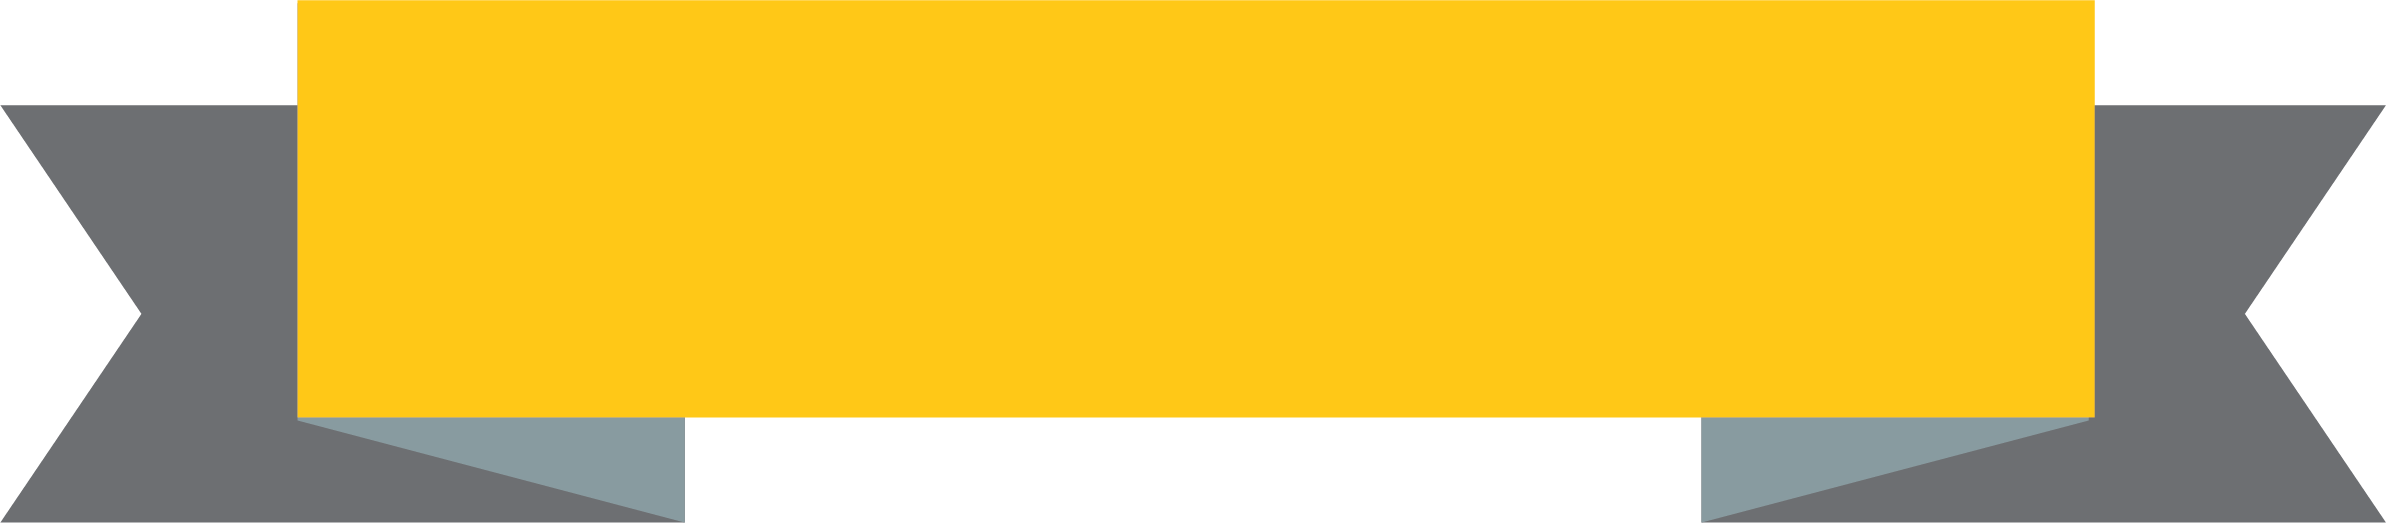 Imagem de PNG de fita amarela com fundo transparente